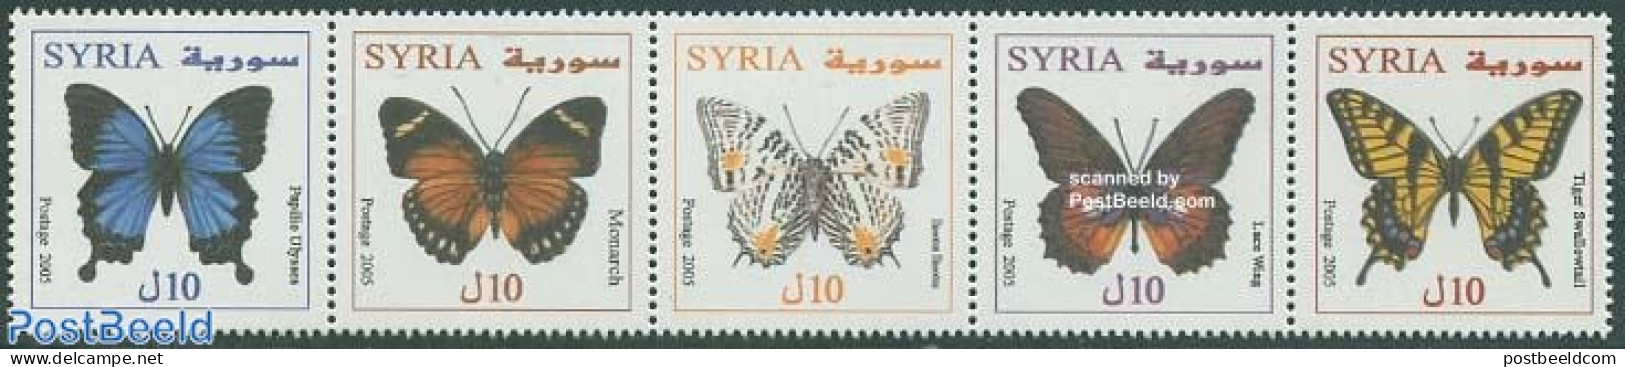 Syria 2005 Butterflies 5v [::::], Mint NH, Nature - Butterflies - Syrien